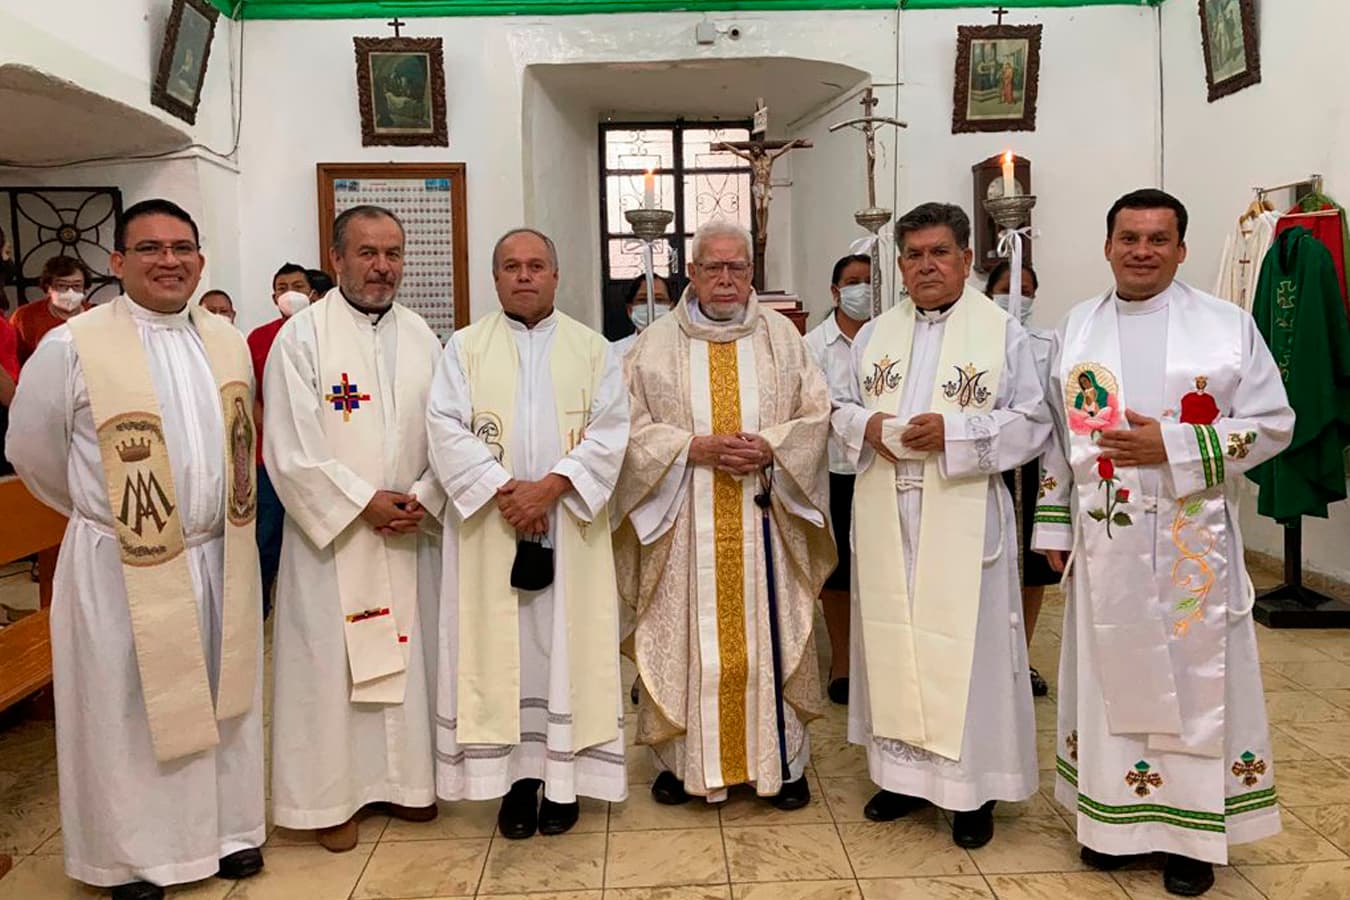 El P. Jesús Antonio Valdés Sánchez, MG, celebra 65 años de vida sacerdotal